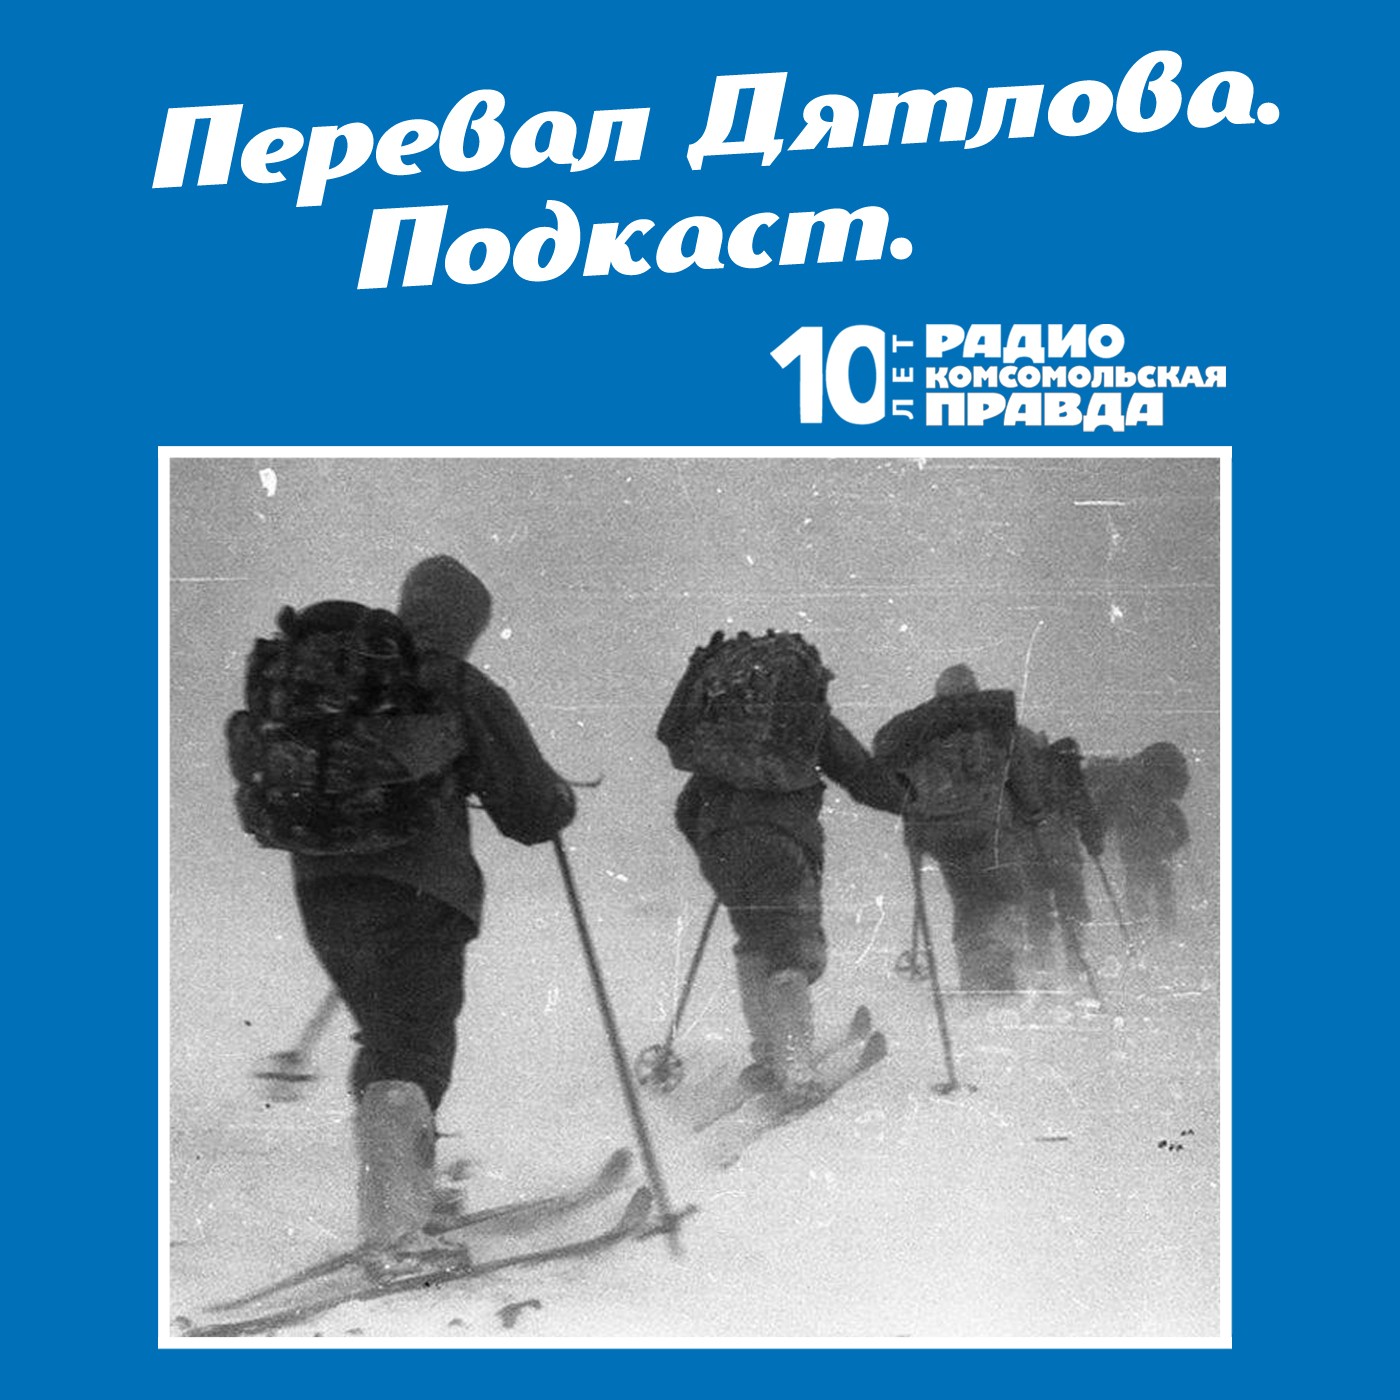 Скачать Трагедия на перевале Дятлова: 64 версии загадочной гибели туристов в 1959 году. Часть 87 и 88 - Радио «Комсомольская правда»